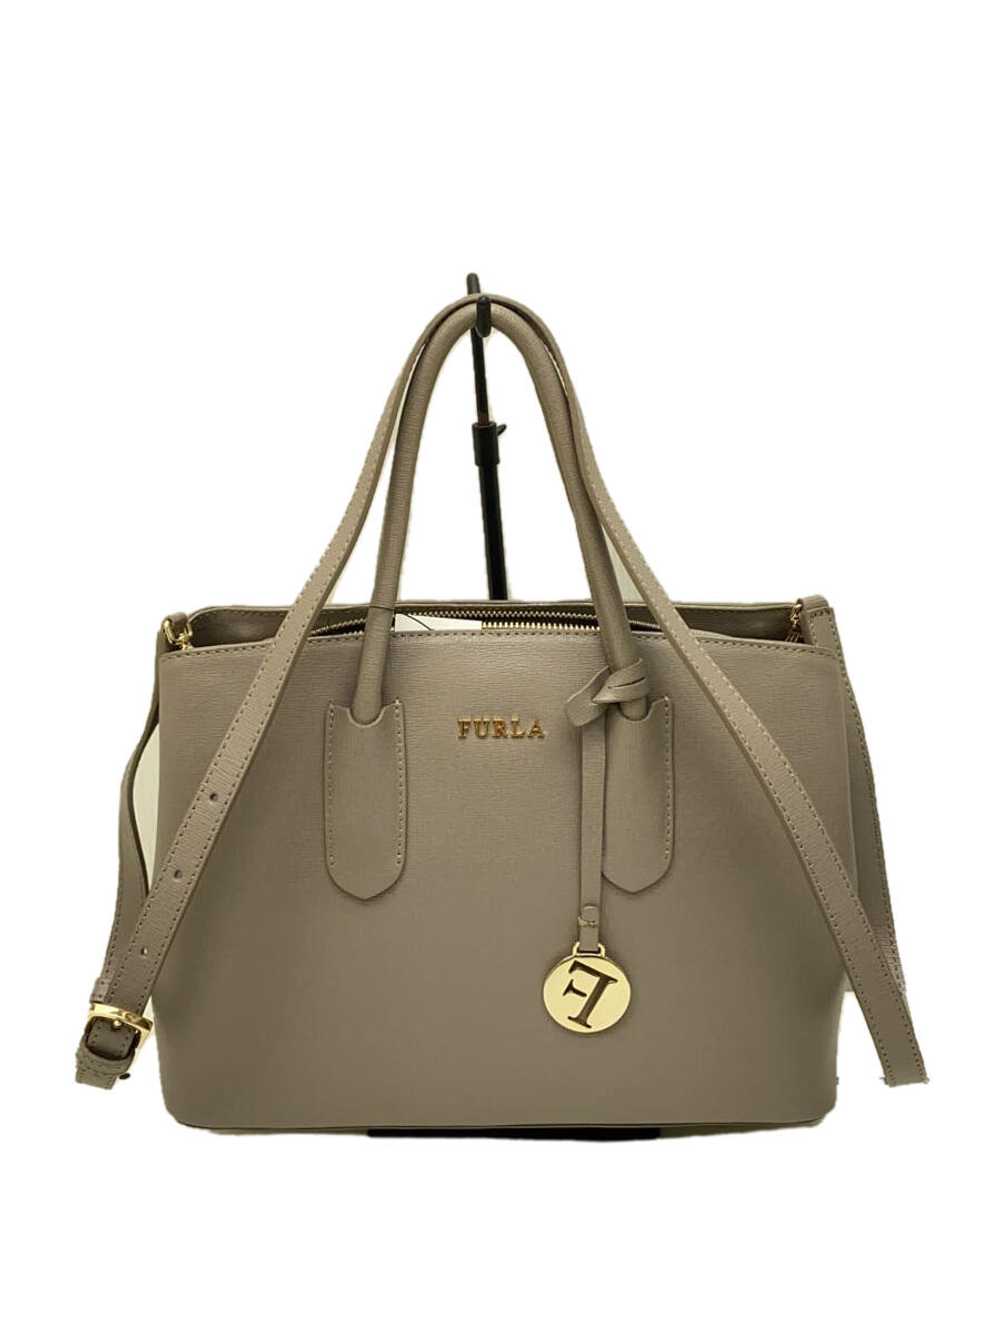 Furla/Handbag/Leather/Gray/Plain Bag - image 1